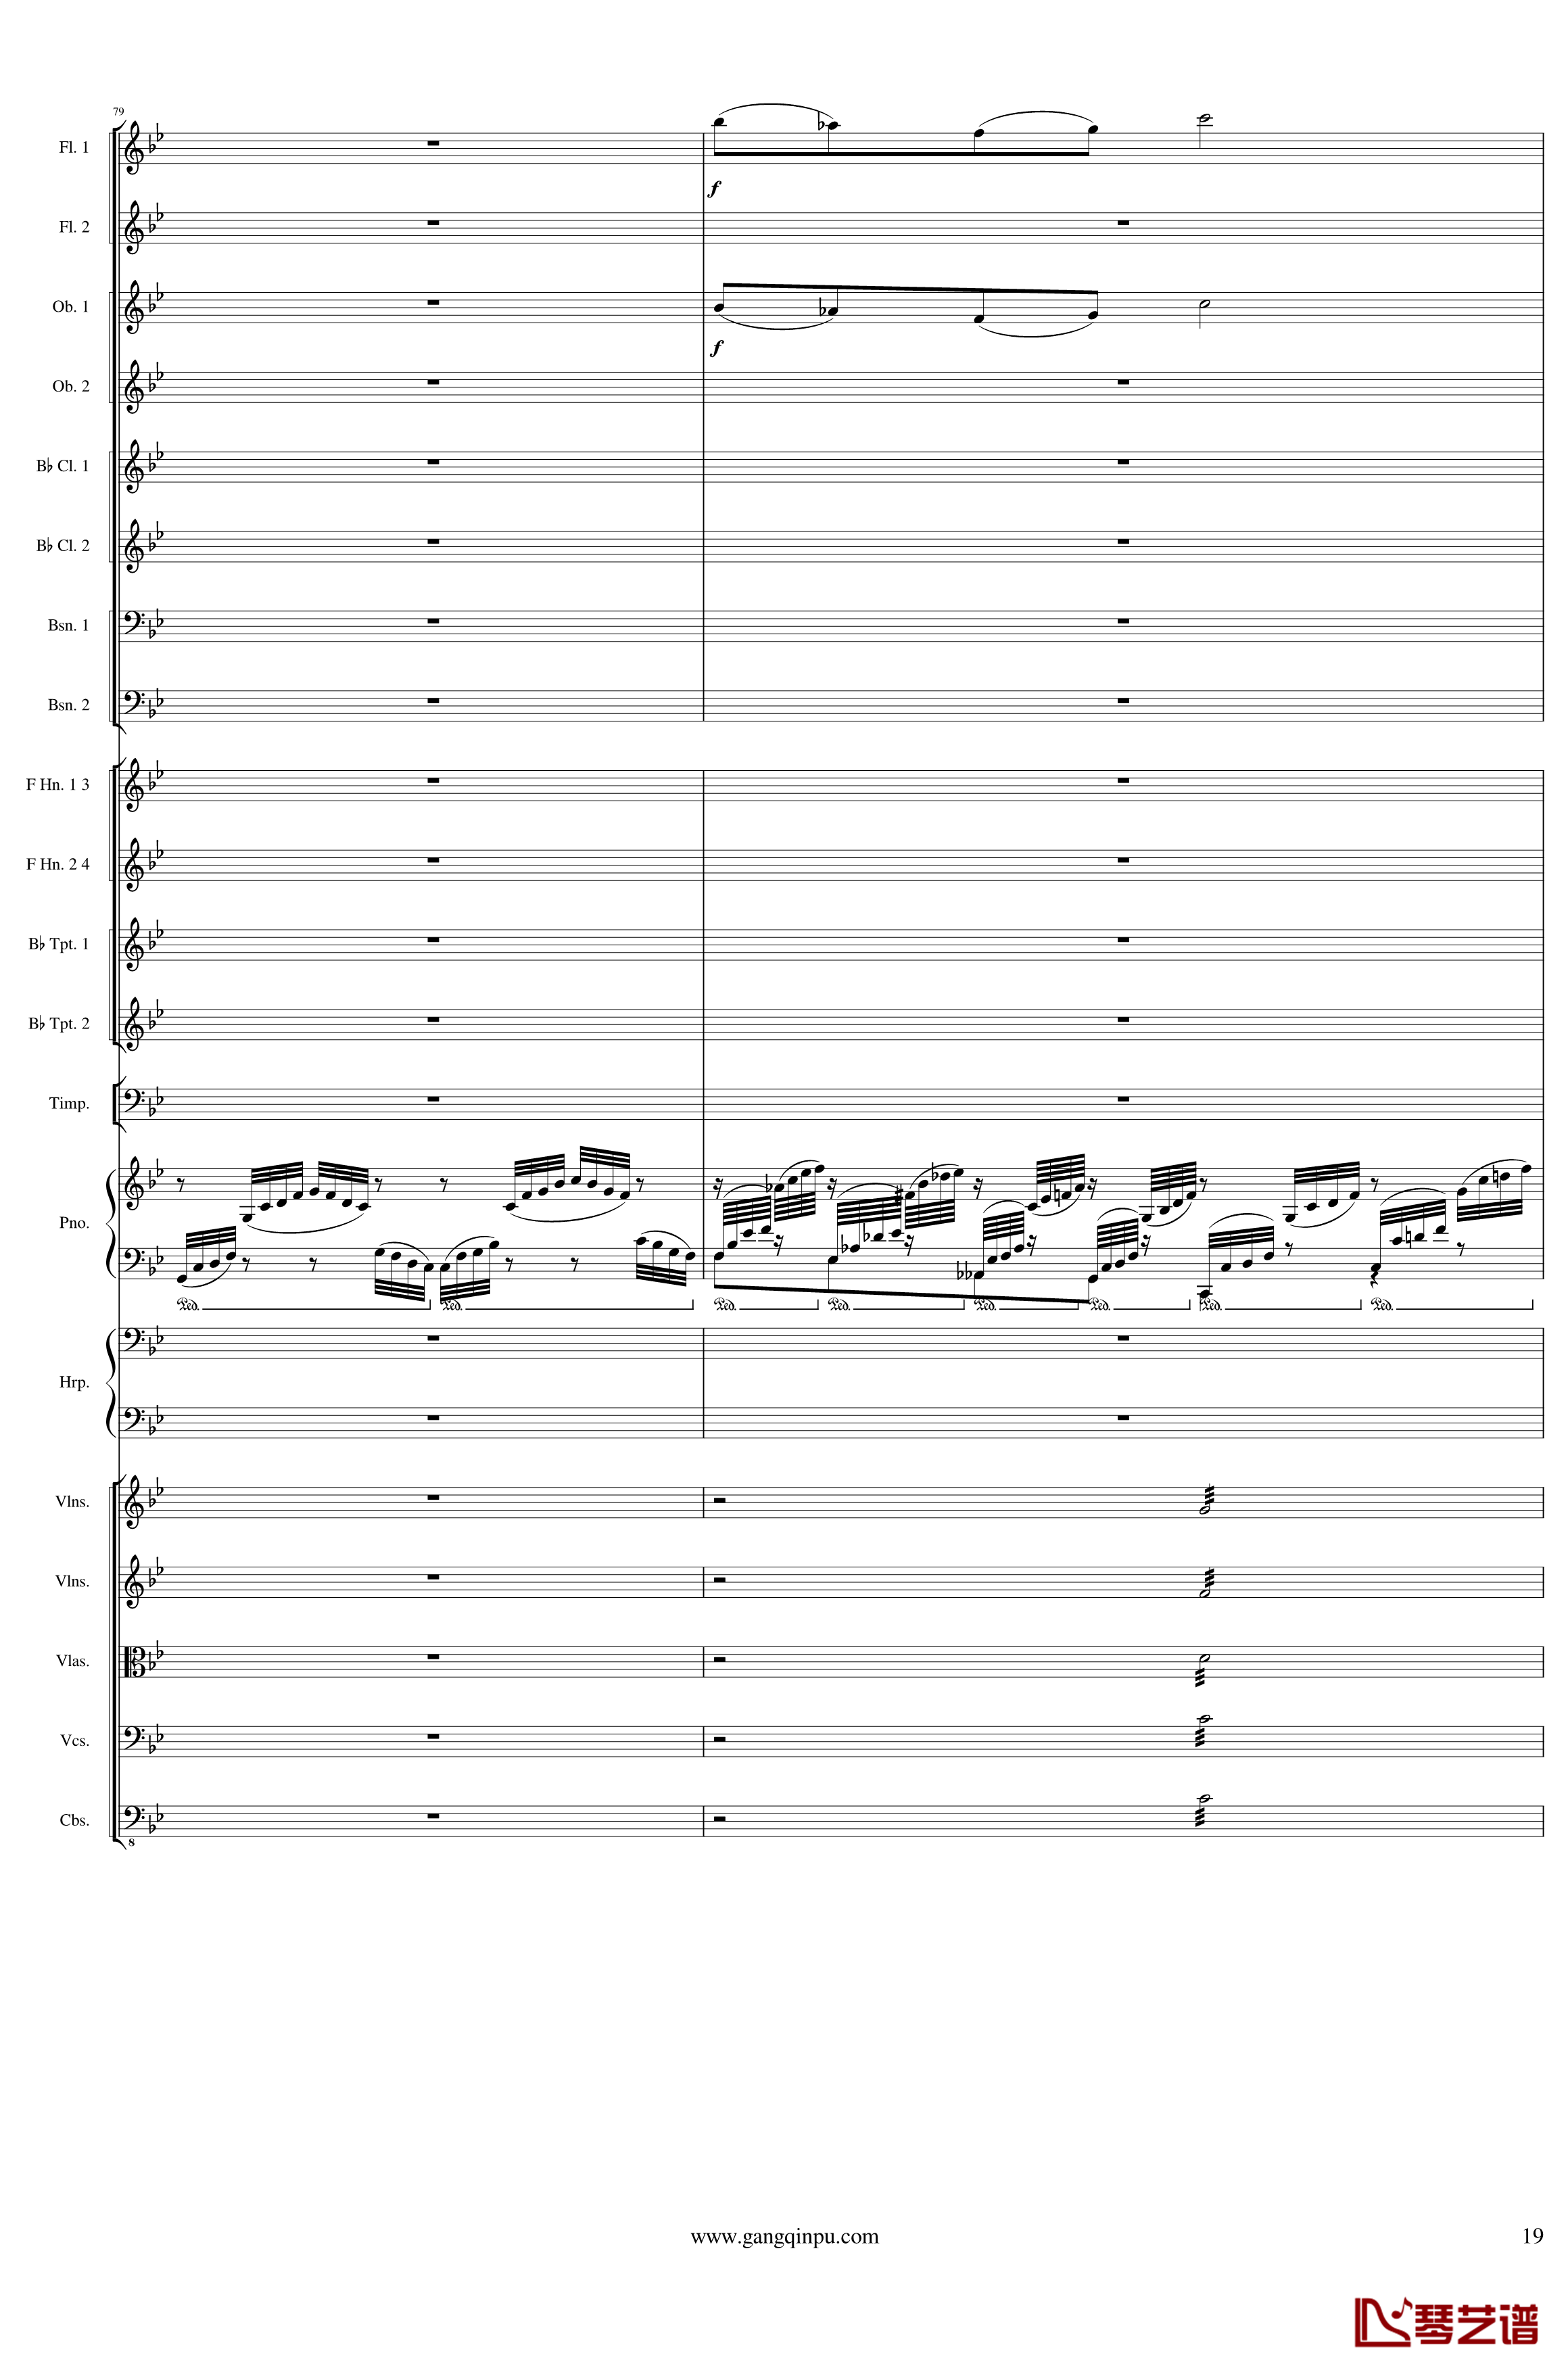 Symphonic Poem No.3, Op.91 Part 1钢琴谱-一个球19